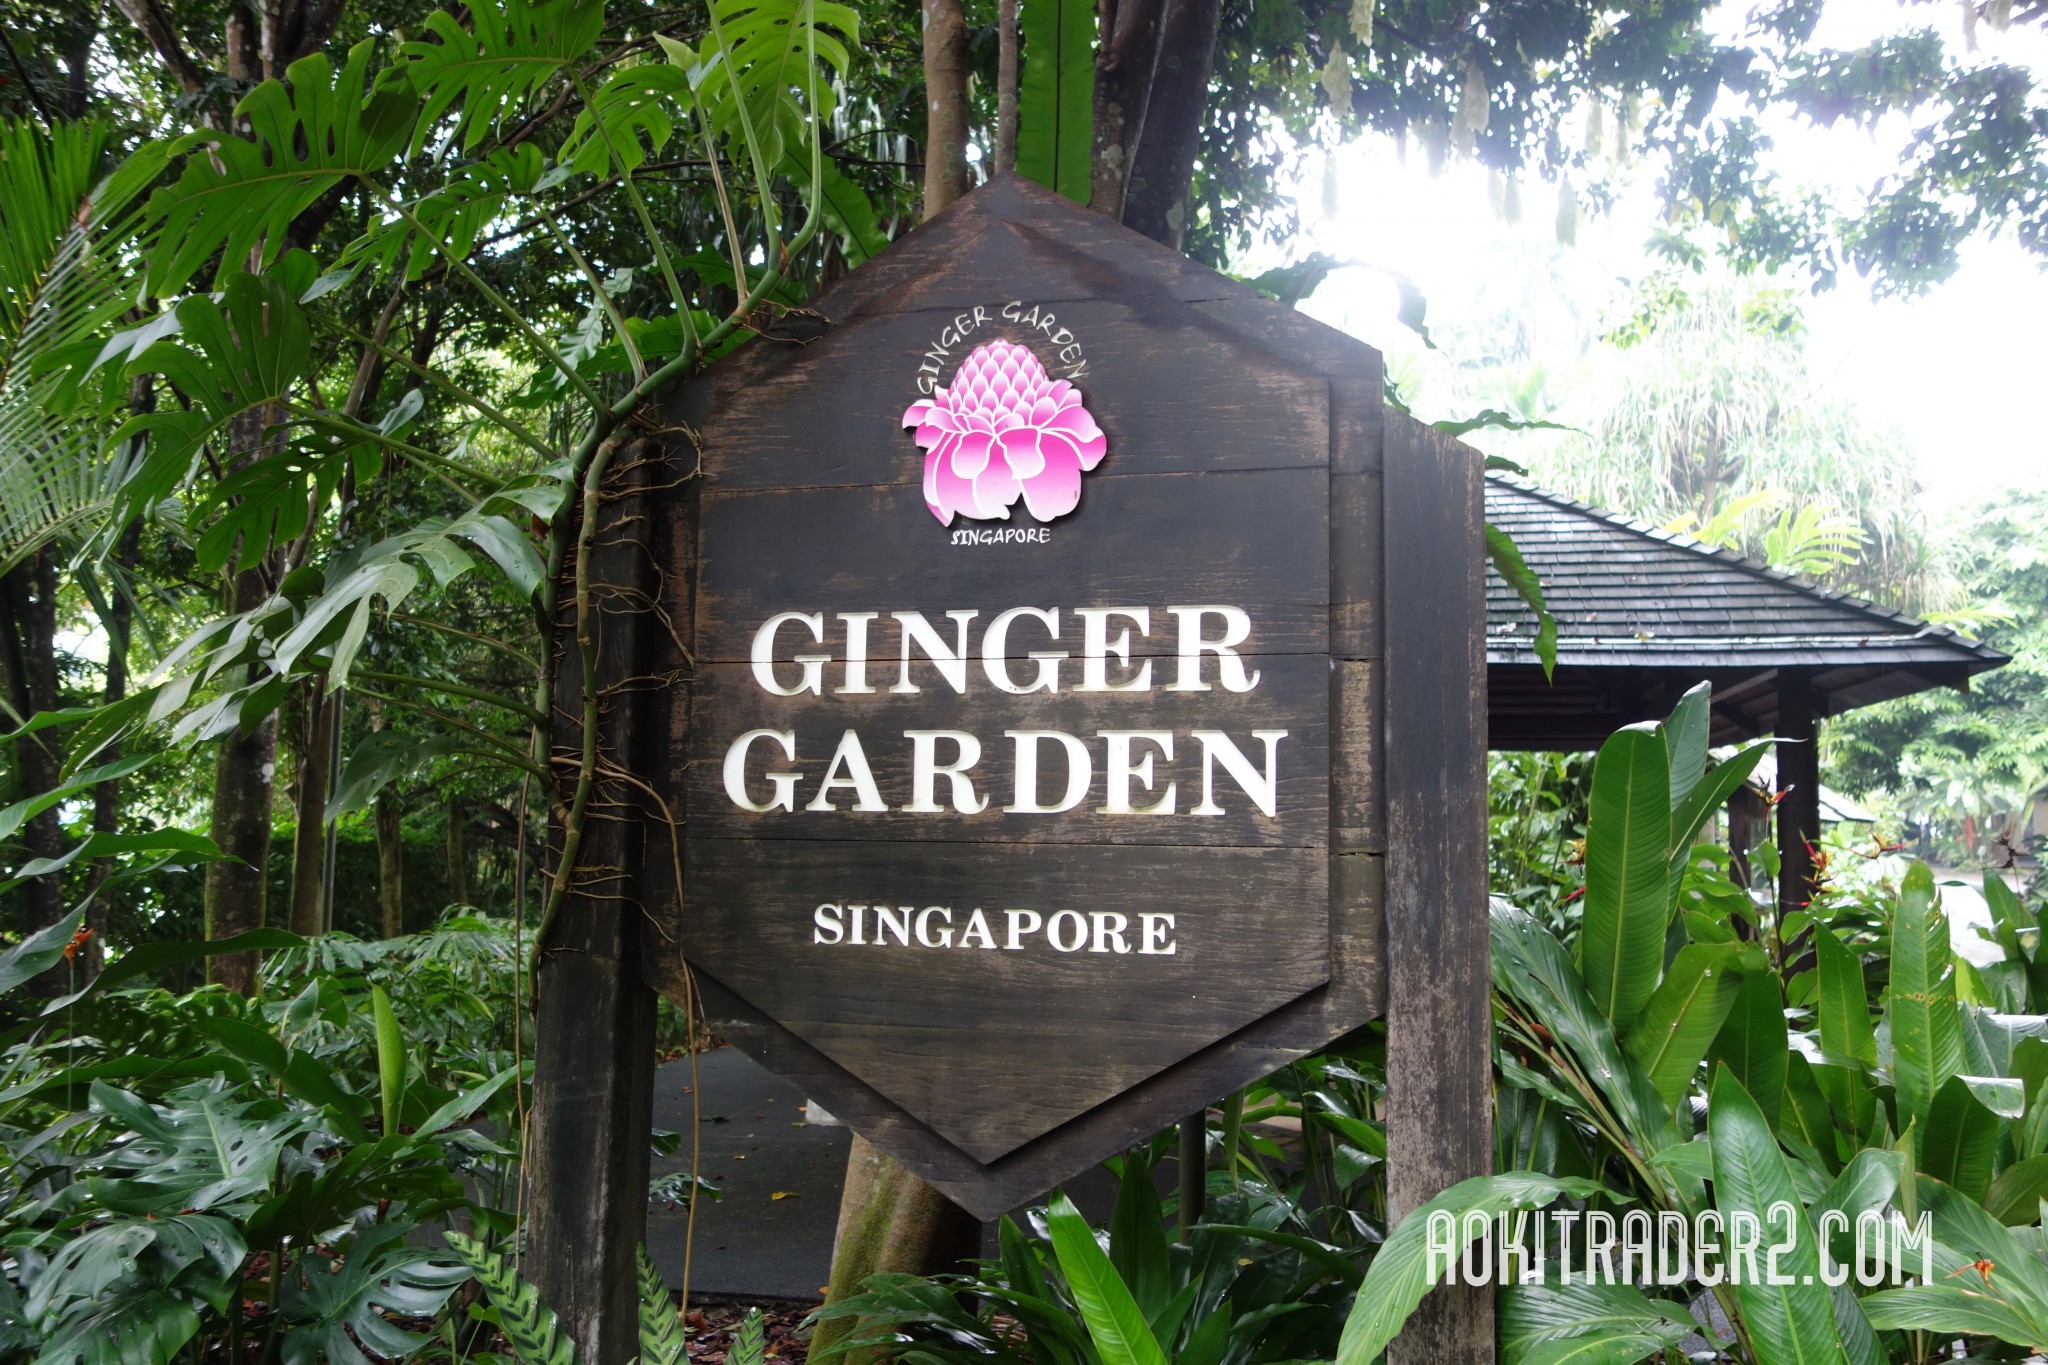 シンガポール植物園のジンジャー・ガーデン看板